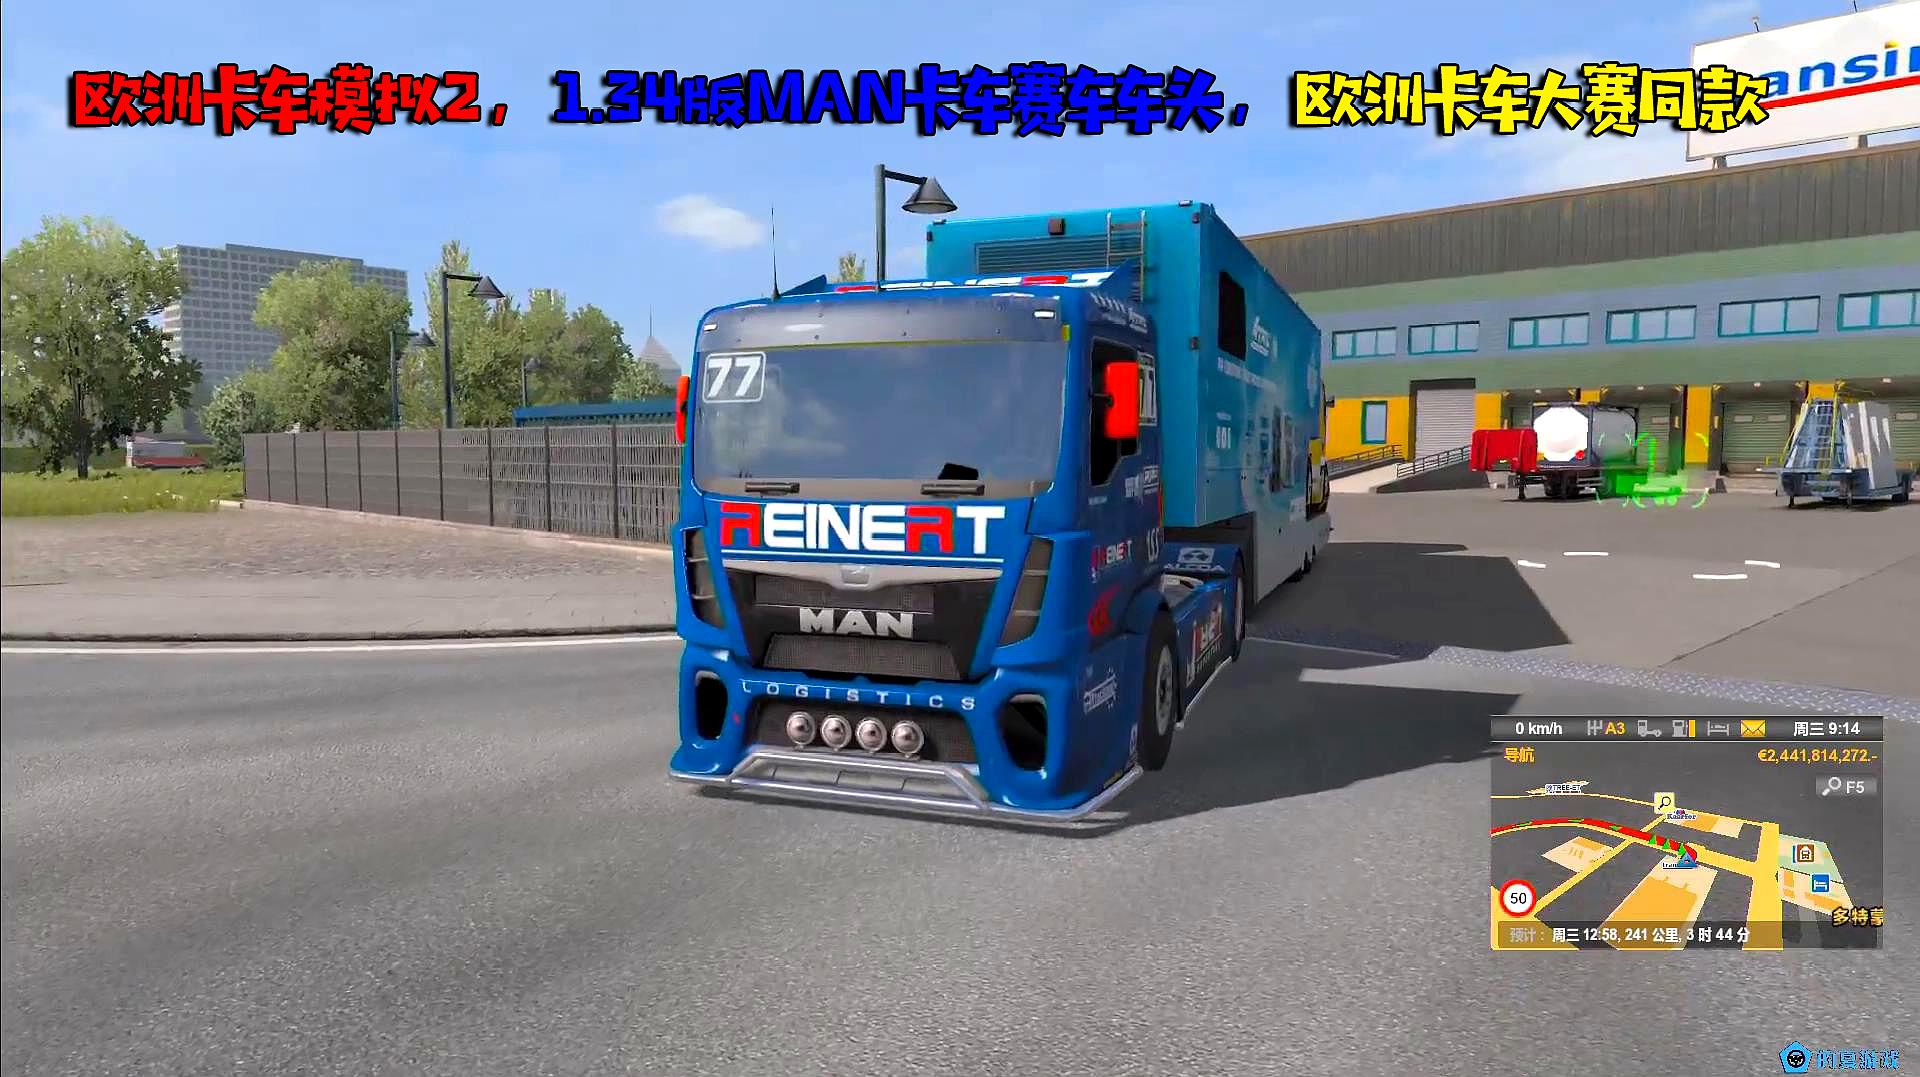 的夏模拟游戏动作冒险类游戏欧洲卡车模拟2的精彩集锦第3期